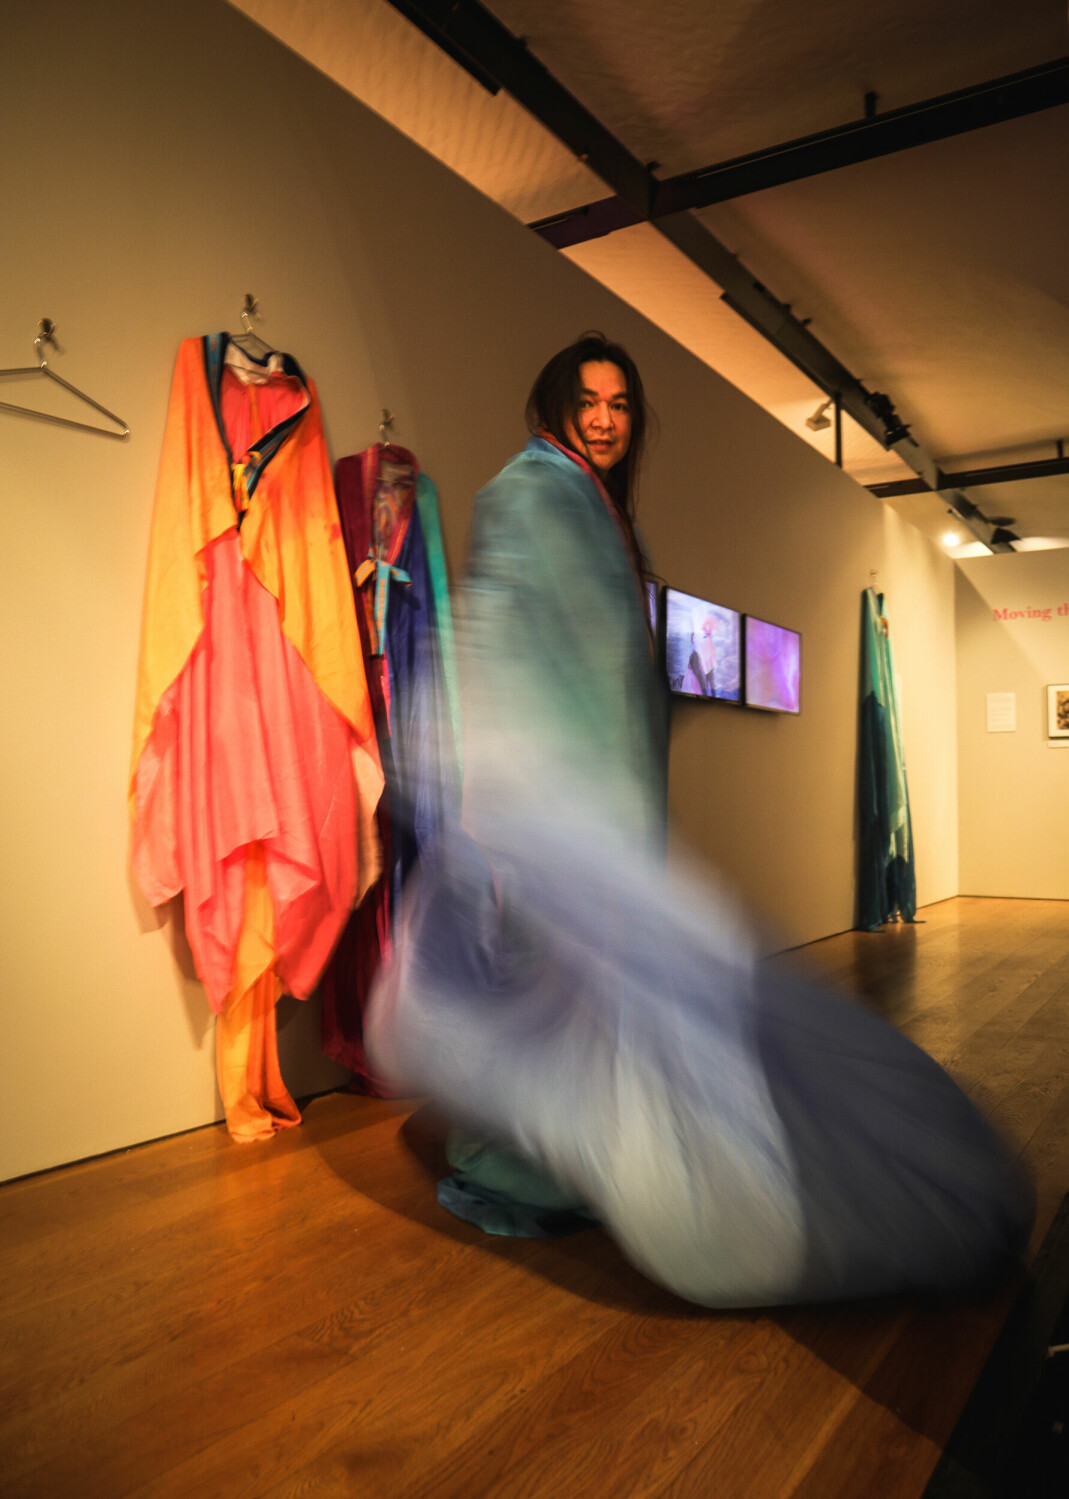 Tekstil og multikunstner Kiyoshi Yamamoto er med på gruppeutstillingen på Fossekleiva som står til 14.august. Yamamoto skaper ofte fargesterke kledninger med innbrodert tekst som legger et dypere lag av mening til verkene. Her fra utstillingsåpningen på Preus Fotomuseum som står ut året.